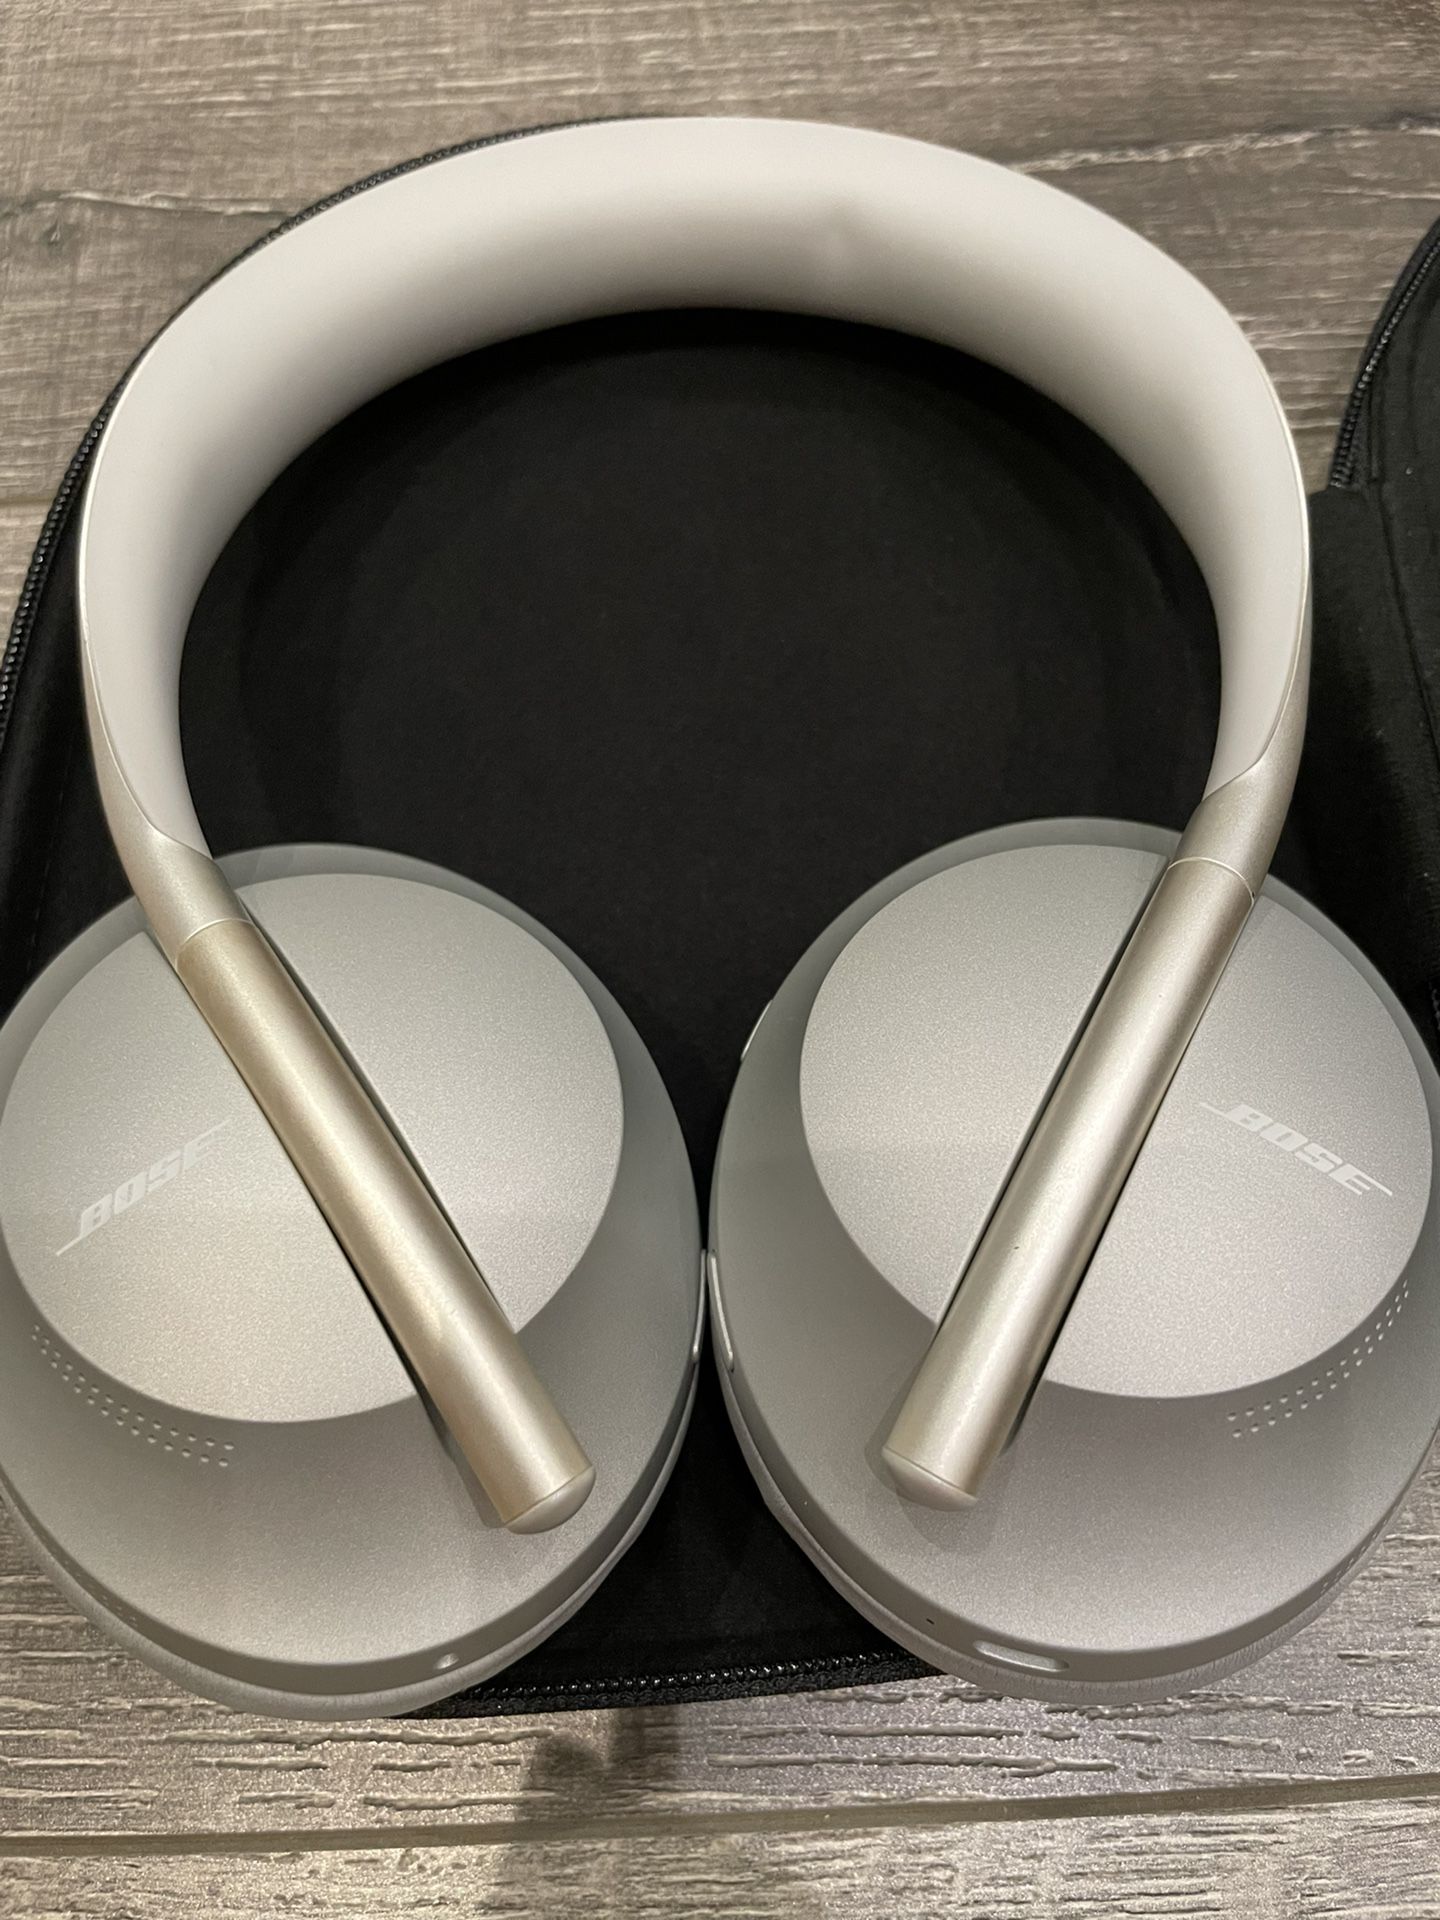  Boise Noise Cancelling Headphones 700 Silver Color